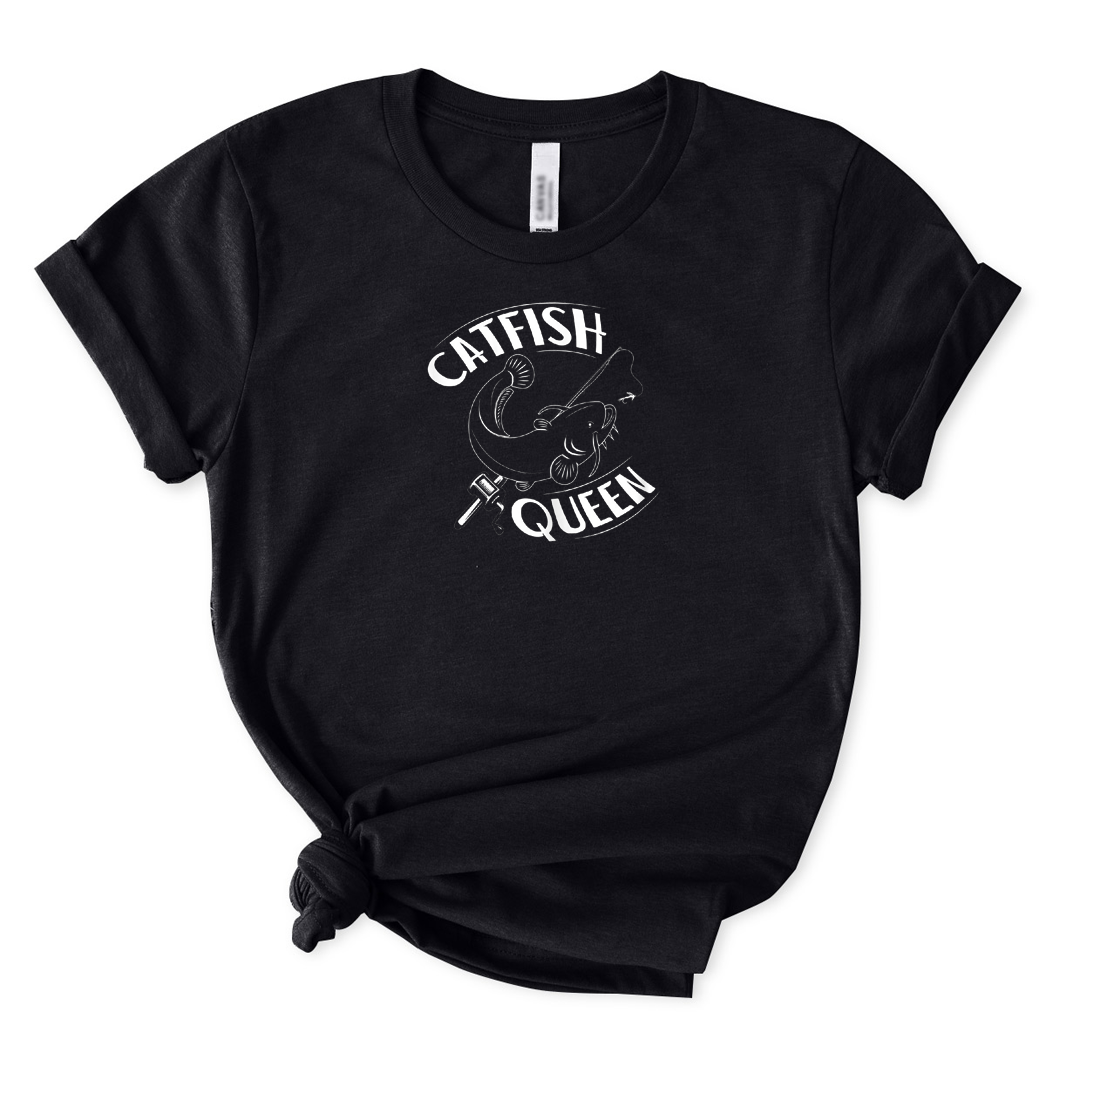 Catfish Queen T-Shirt for Women